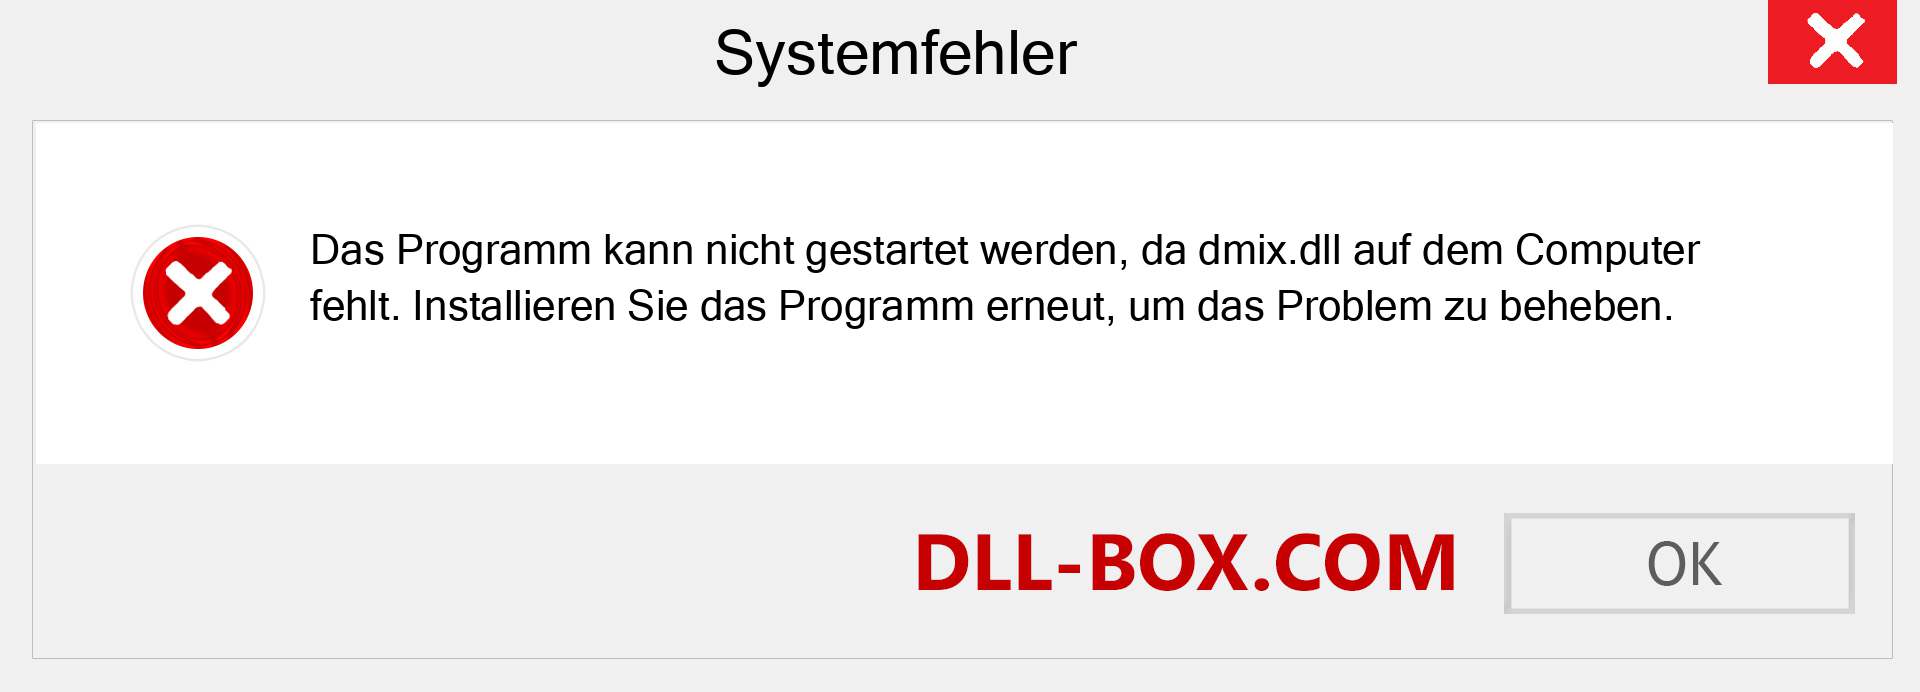 dmix.dll-Datei fehlt?. Download für Windows 7, 8, 10 - Fix dmix dll Missing Error unter Windows, Fotos, Bildern